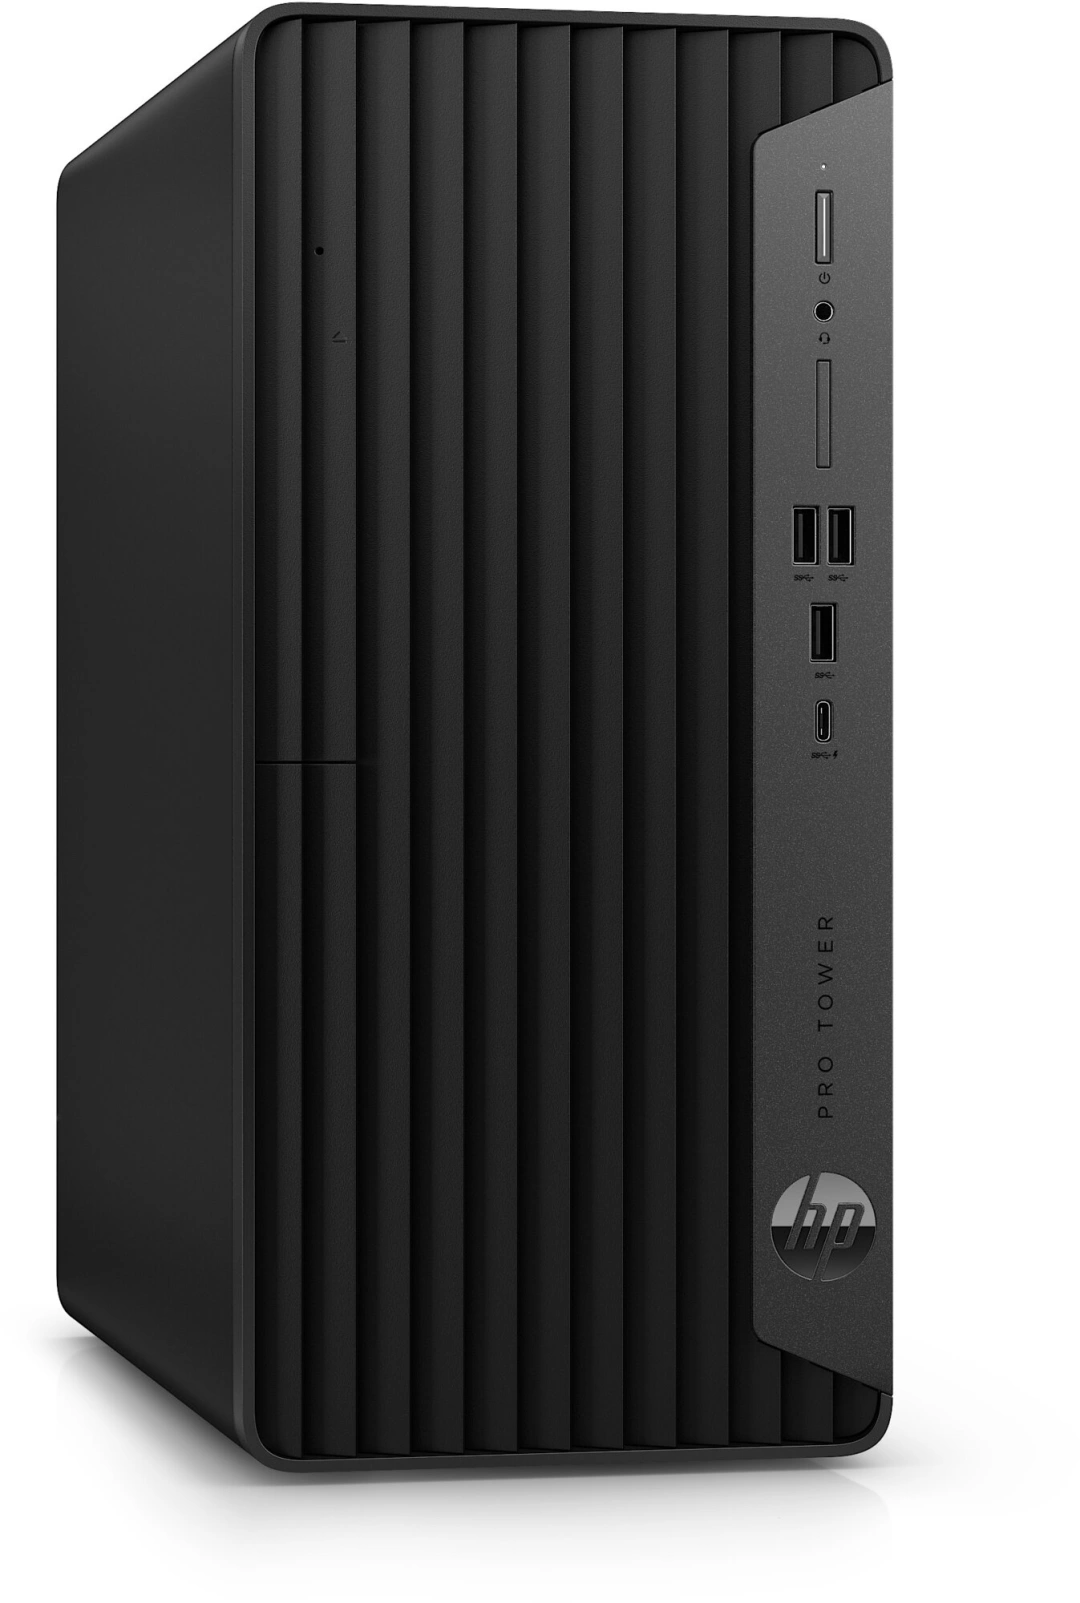 HP Pro Tower 400 G9, black (99Q27ET)